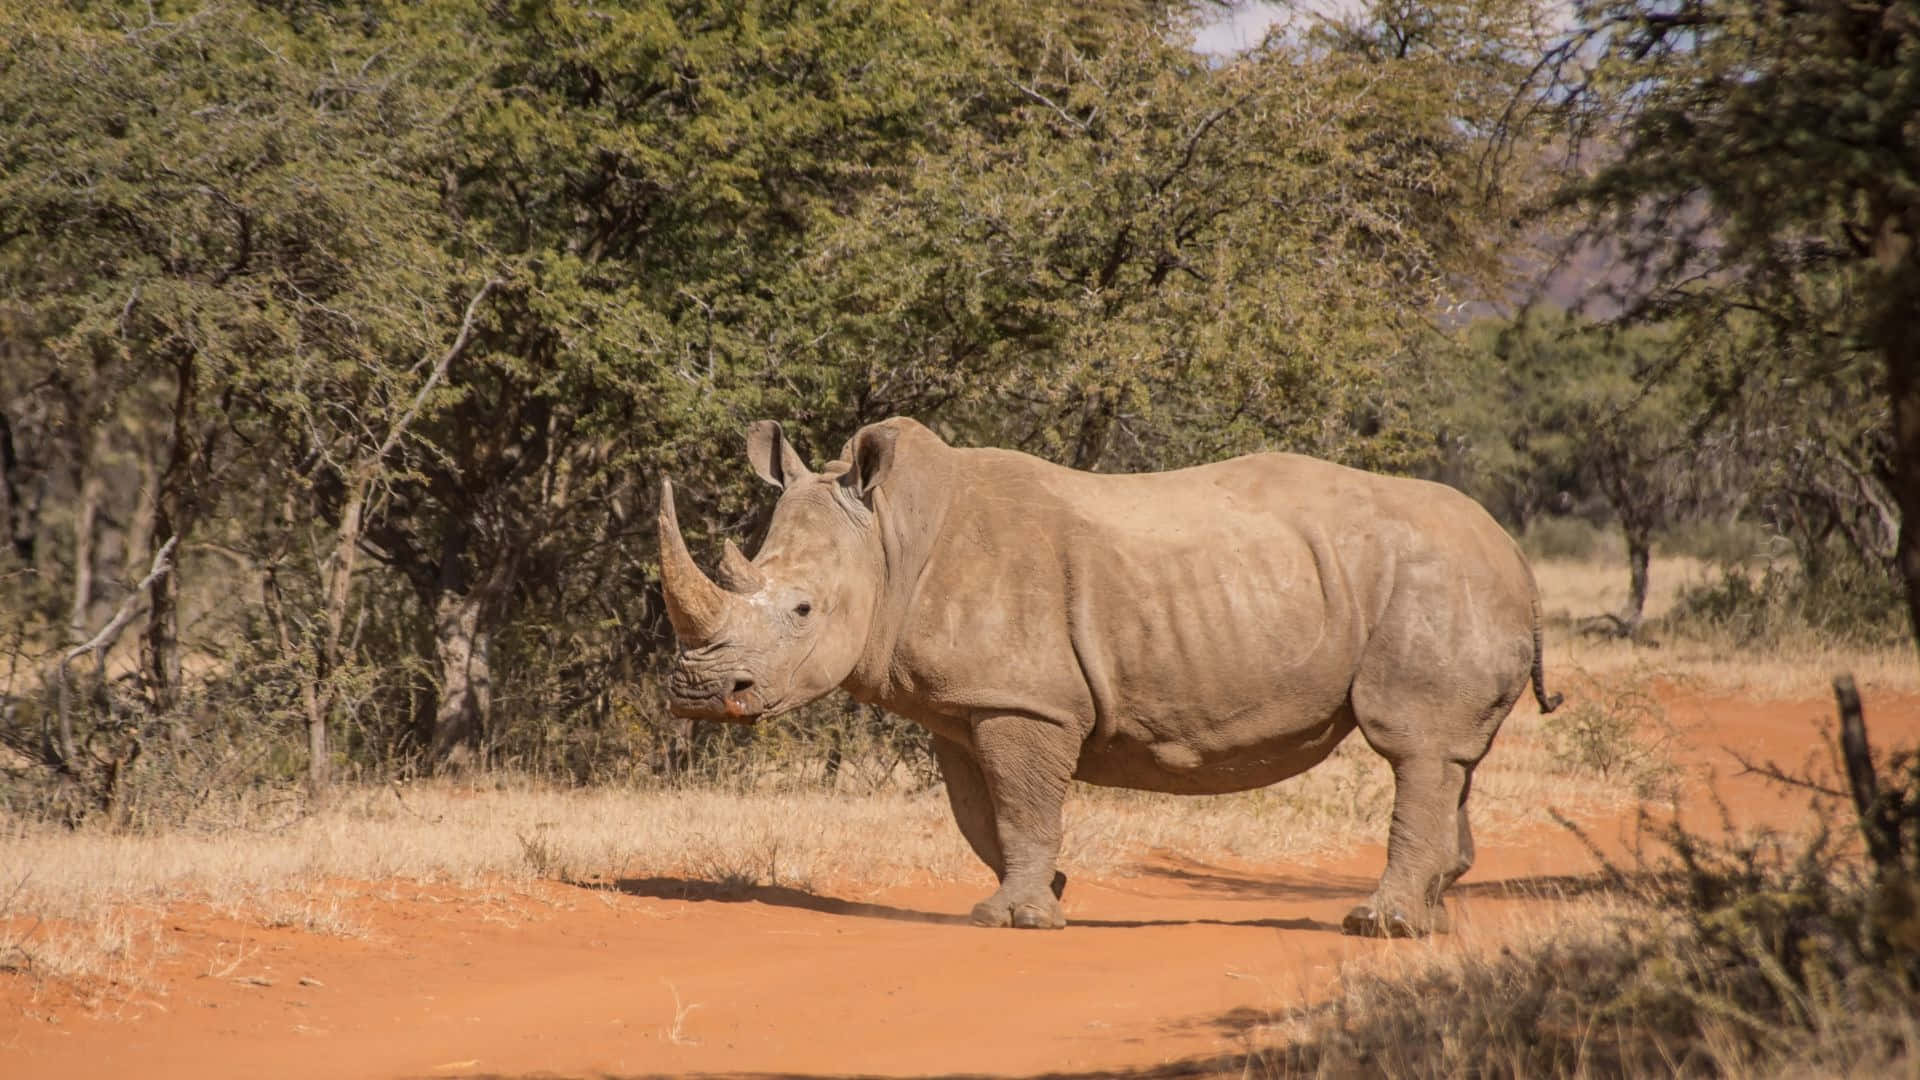 White Rhinocerosin Natural Habitat.jpg Wallpaper